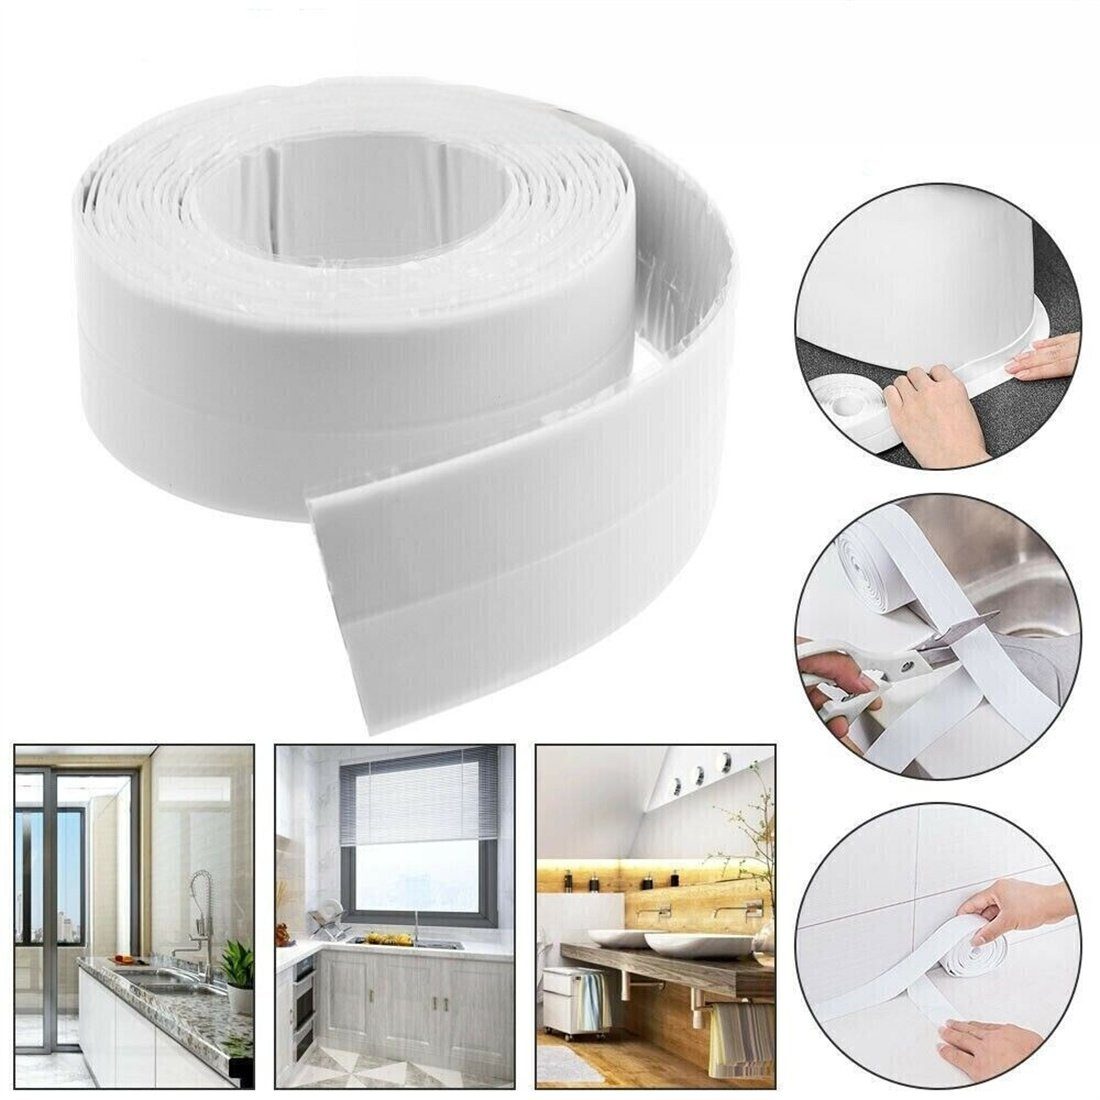 DÖRÖY Klebeband Wannendichtband Küche Badezimmer Wanne breit3.8cm selbstklebend Dusche